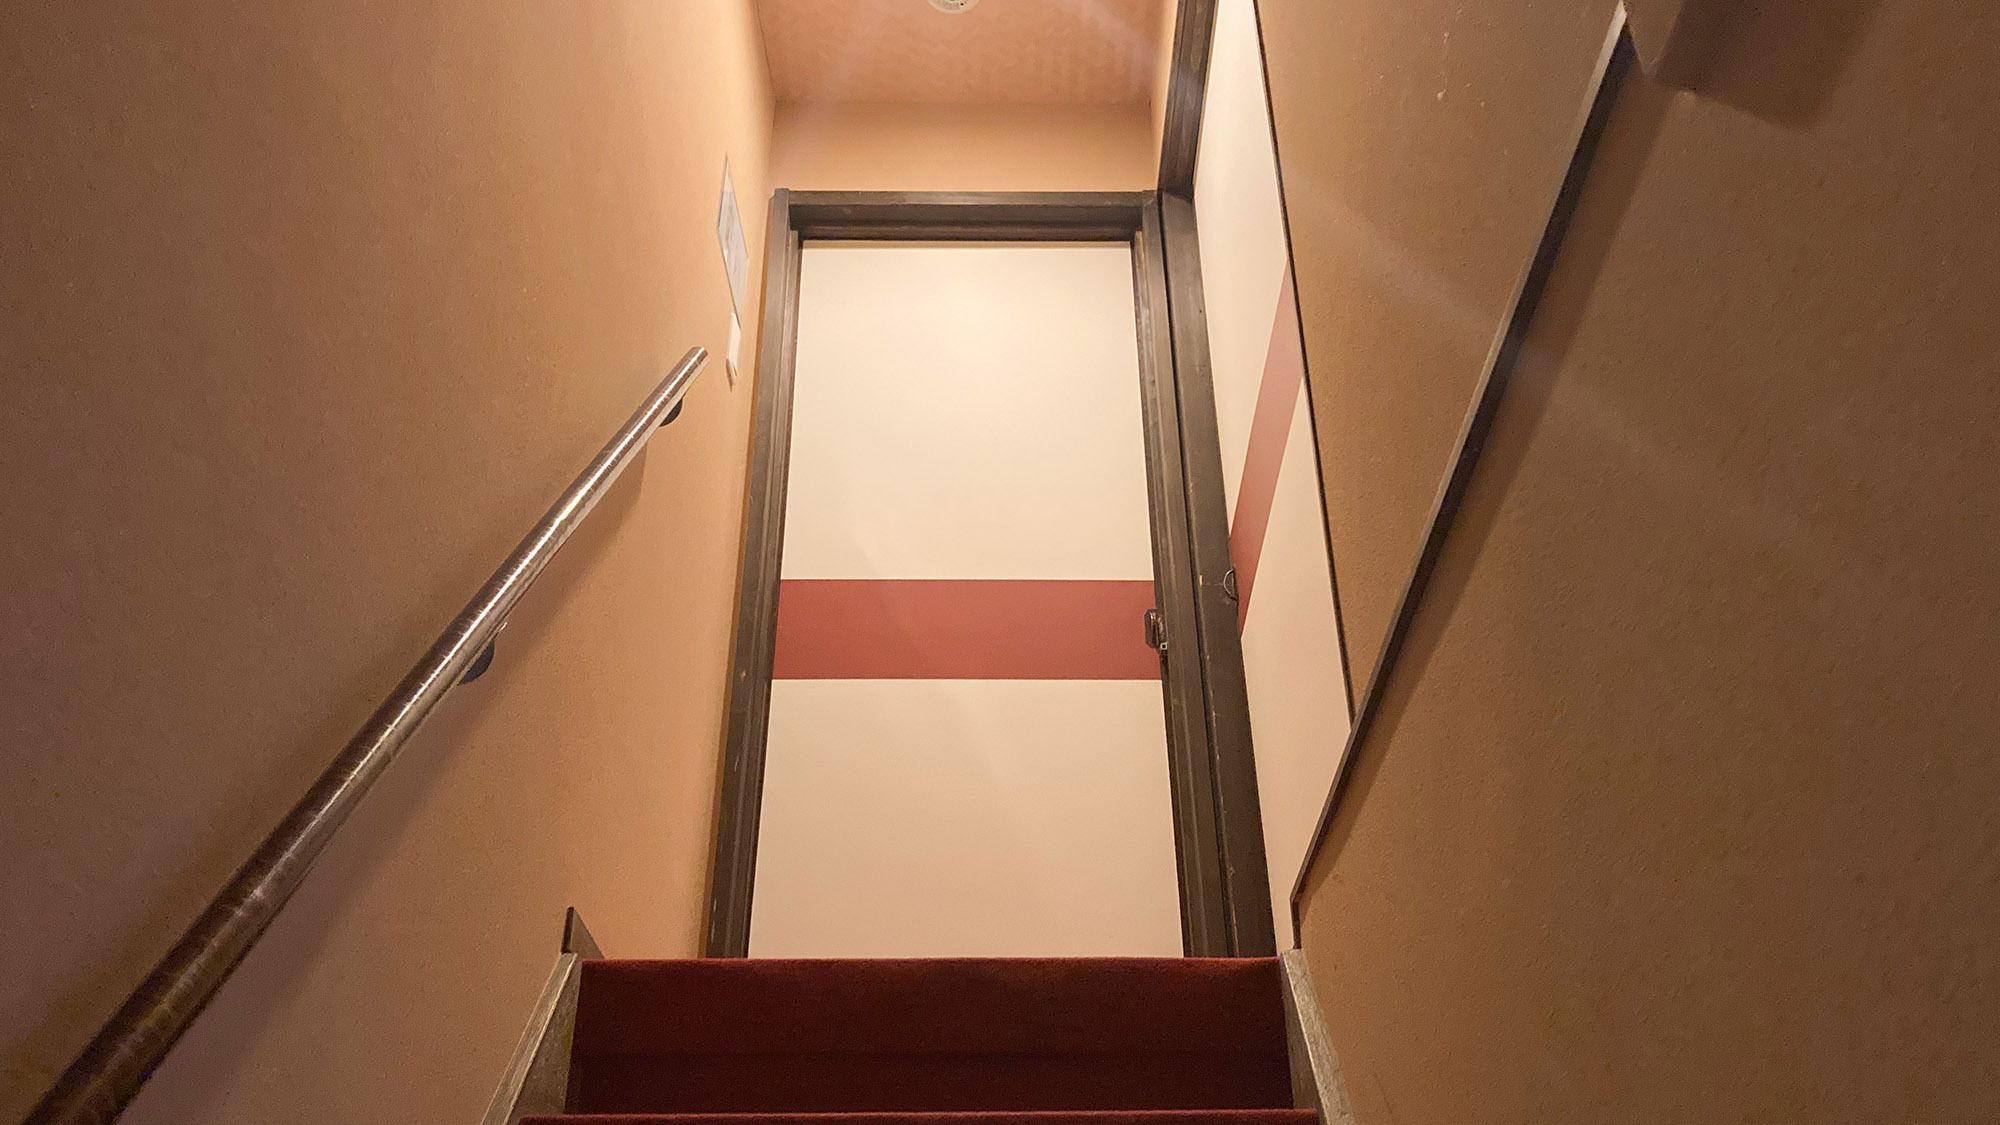 ・【2F階段】寝室は2階にございます。お客様の人数に応じてお布団をご用意致します